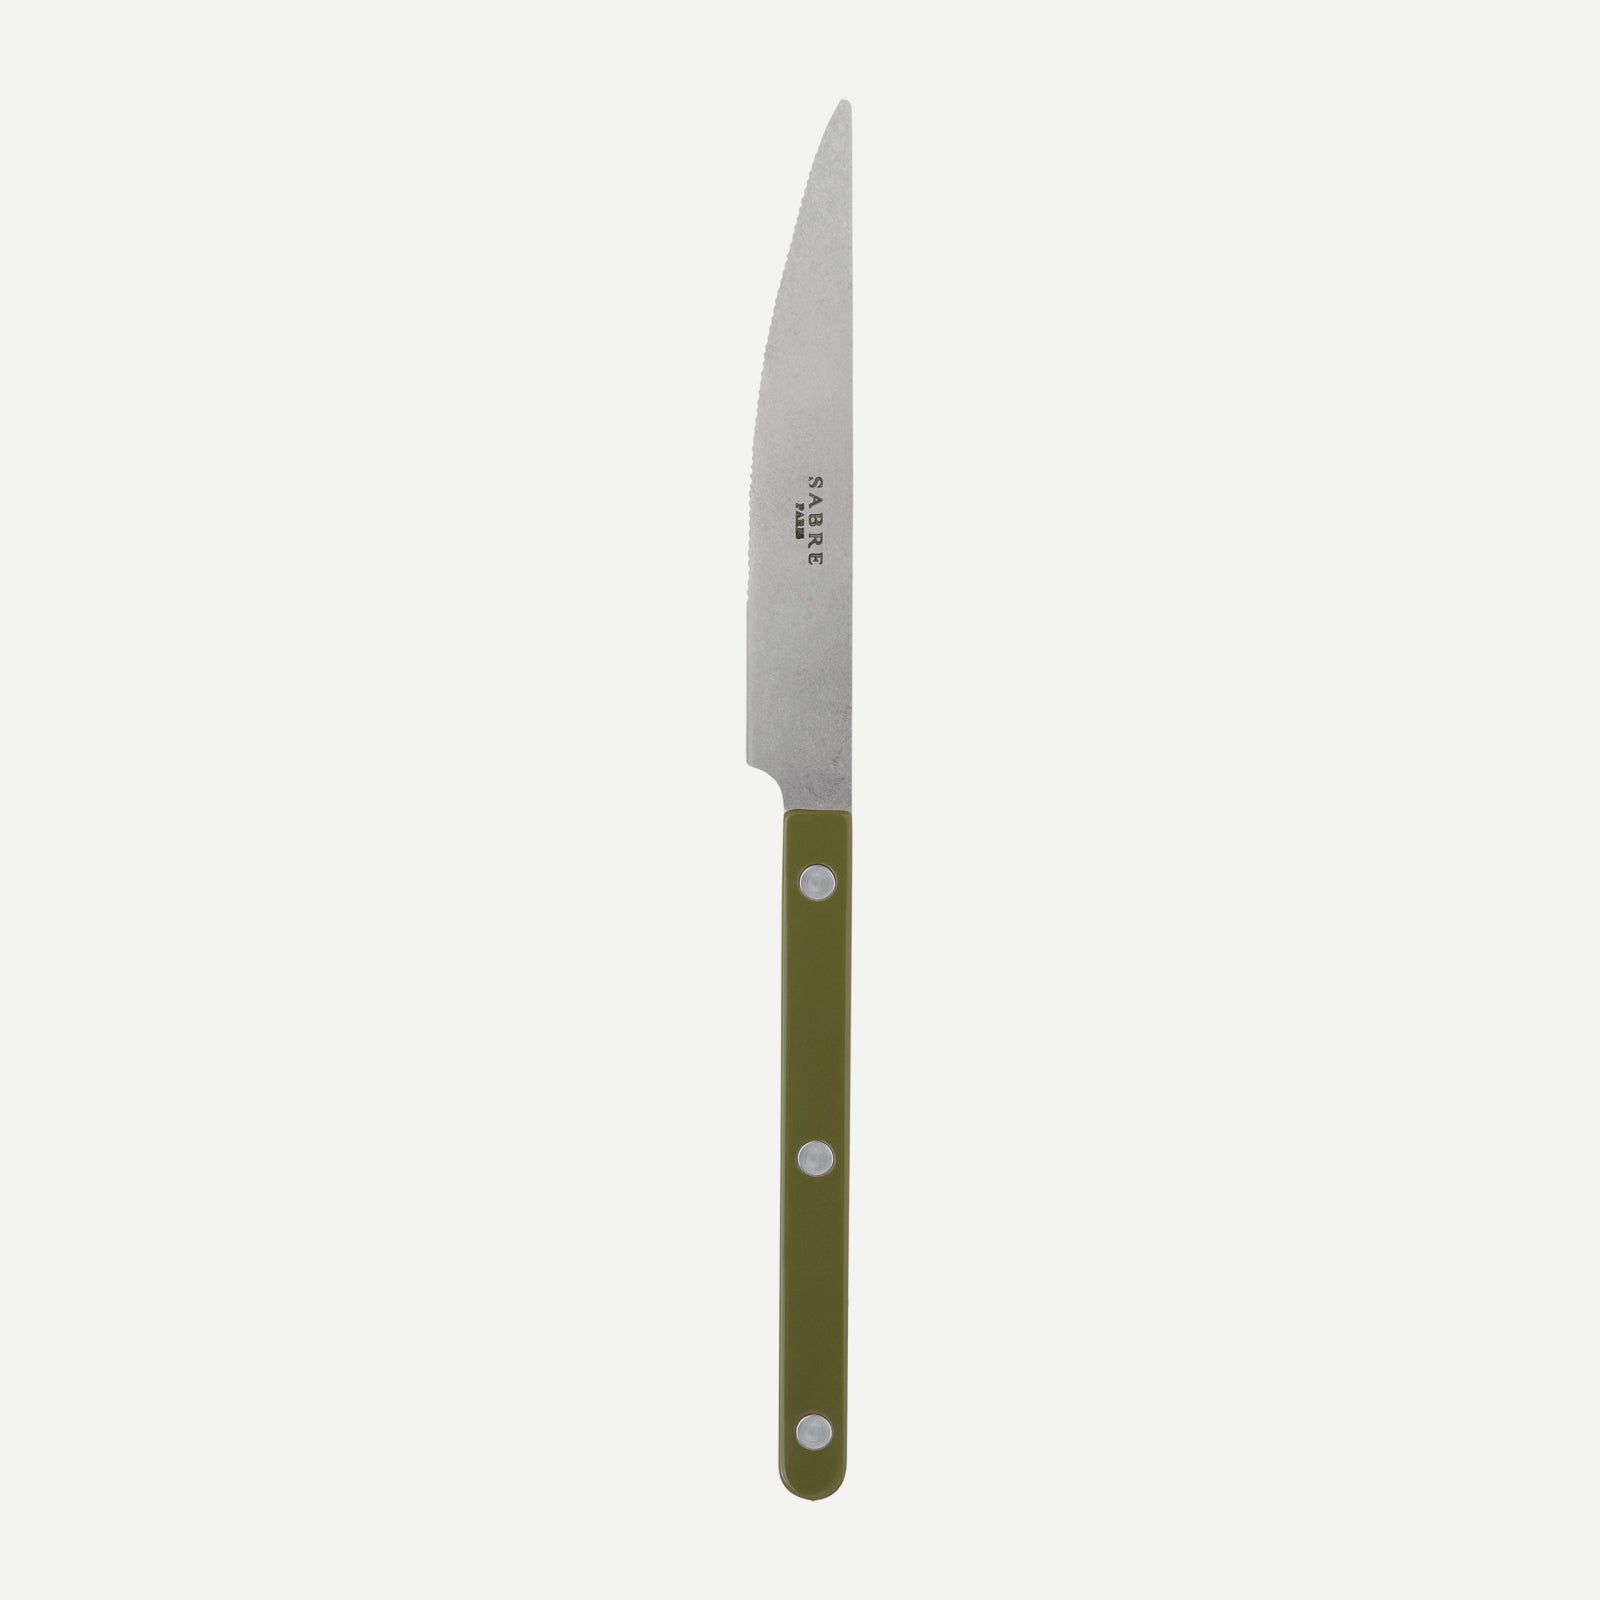 Dinner knife - Bistrot vintage solid - Green fern